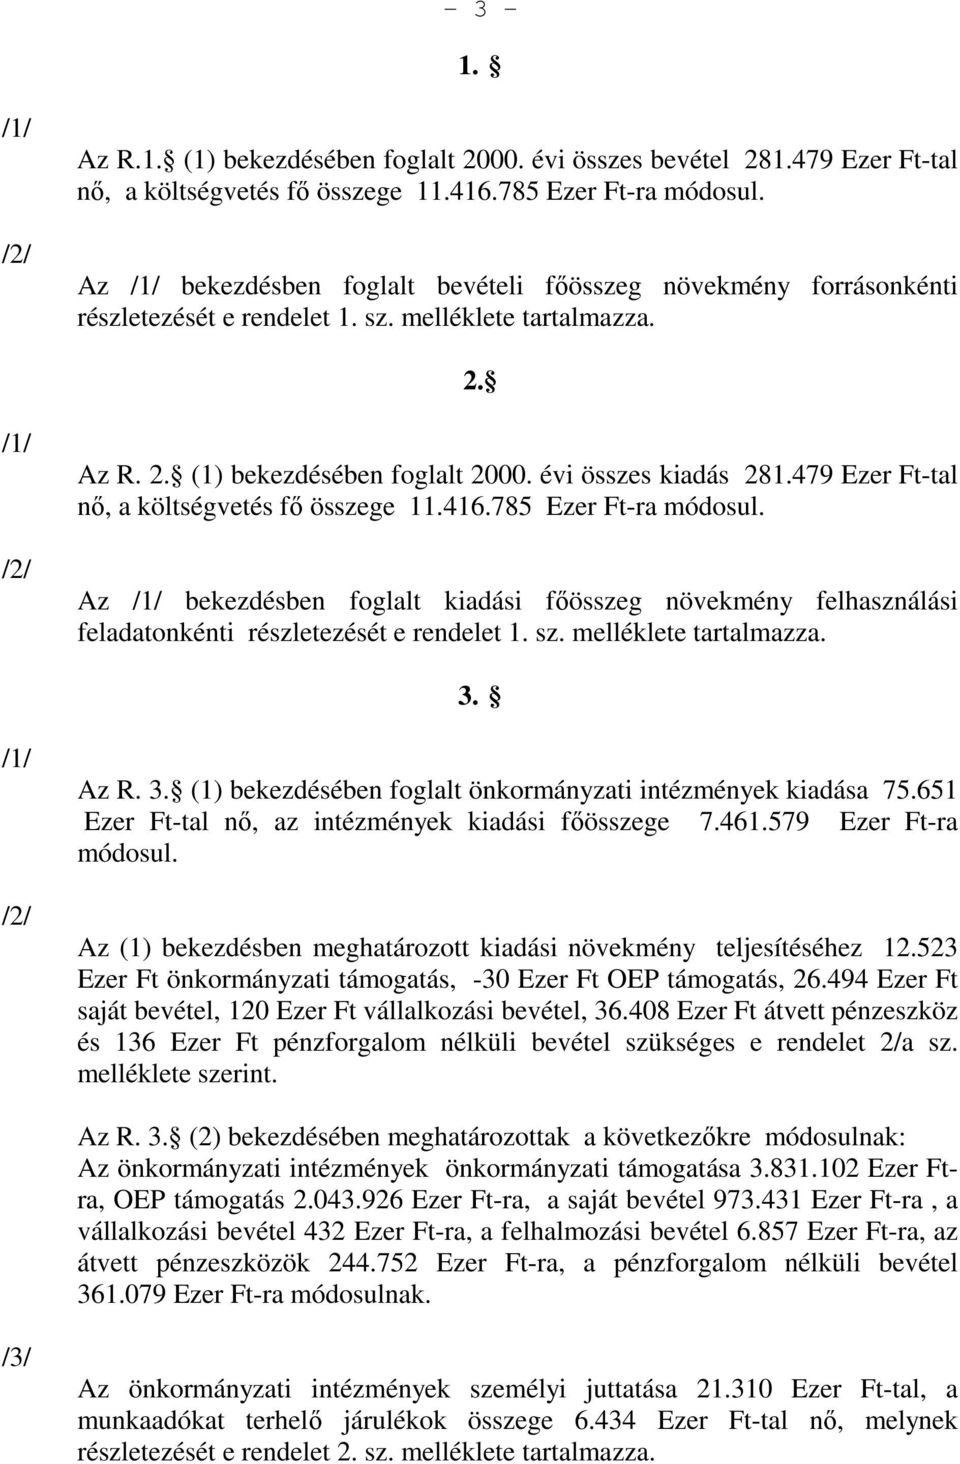 479 Ezer Ft-tal nı, a költségvetés fı összege 11.416.785 Ezer Ft-ra módosul. Az /1/ bekezdésben foglalt kiadási fıösszeg növekmény felhasználási feladatonkénti részletezését e rendelet 1. sz.